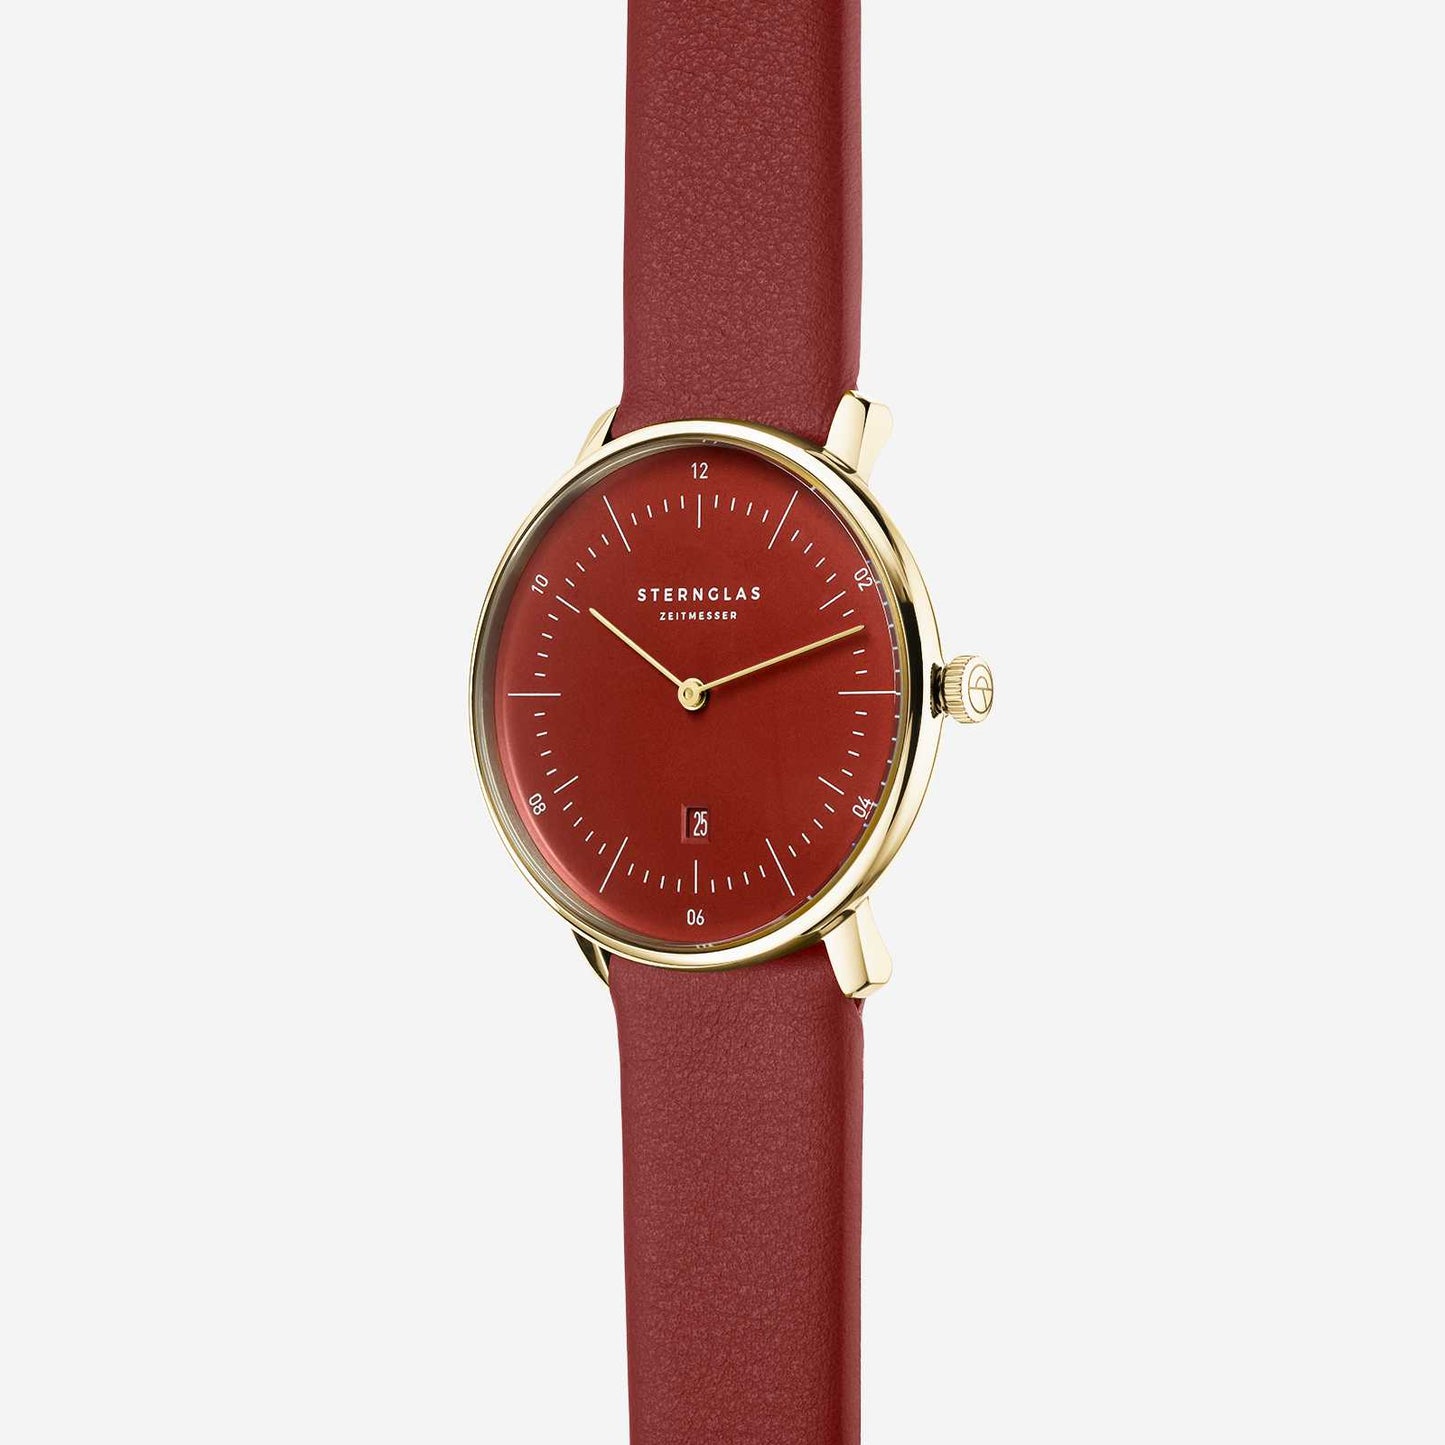 popup|Ronda Quarz-Uhrwerk|Das Premium Uhrwerk des Schweizer Traditionsherstellers Ronda sorgt für Präzision und Langlebigkeit.